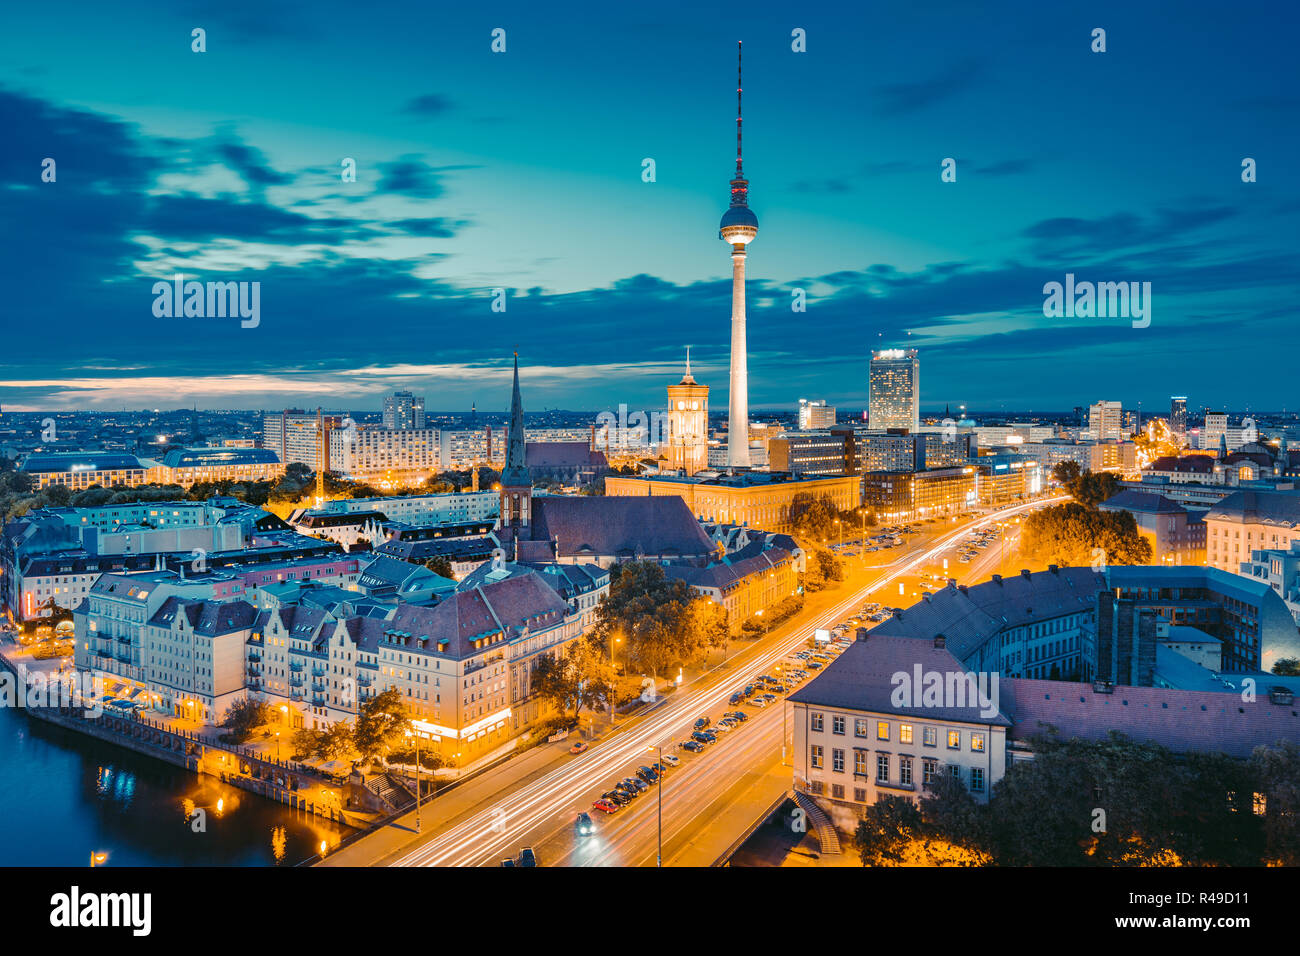 Klassische Ansicht der Berliner Skyline mit berühmten Fernsehturm und Spree in wunderschönen goldenen Abendlicht bei Dämmerung, zentrale Berlin Mitte, Deutschland Stockfoto